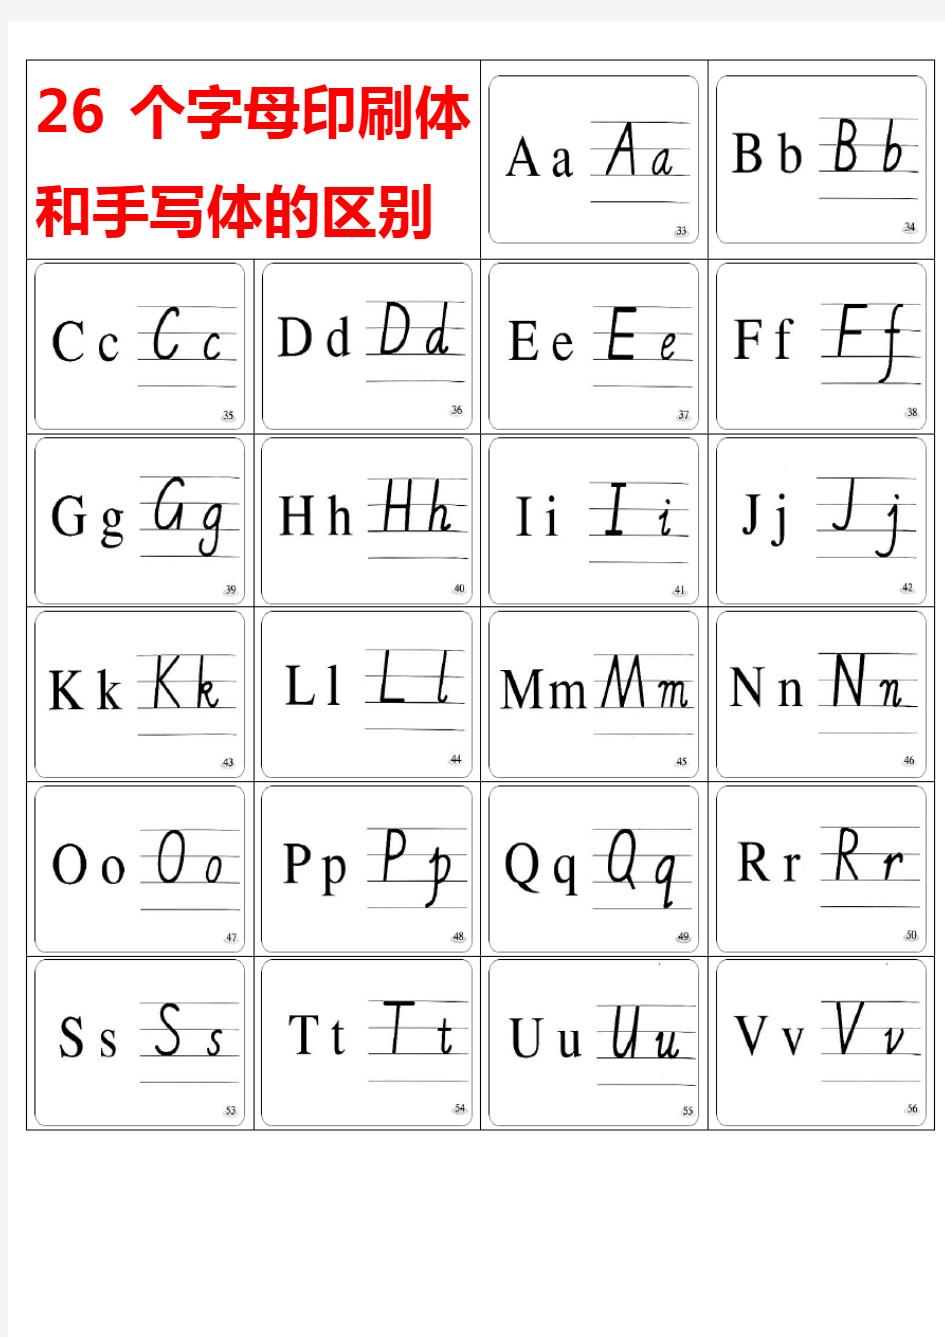 26个英文字母印刷体与手写体对照表及练习